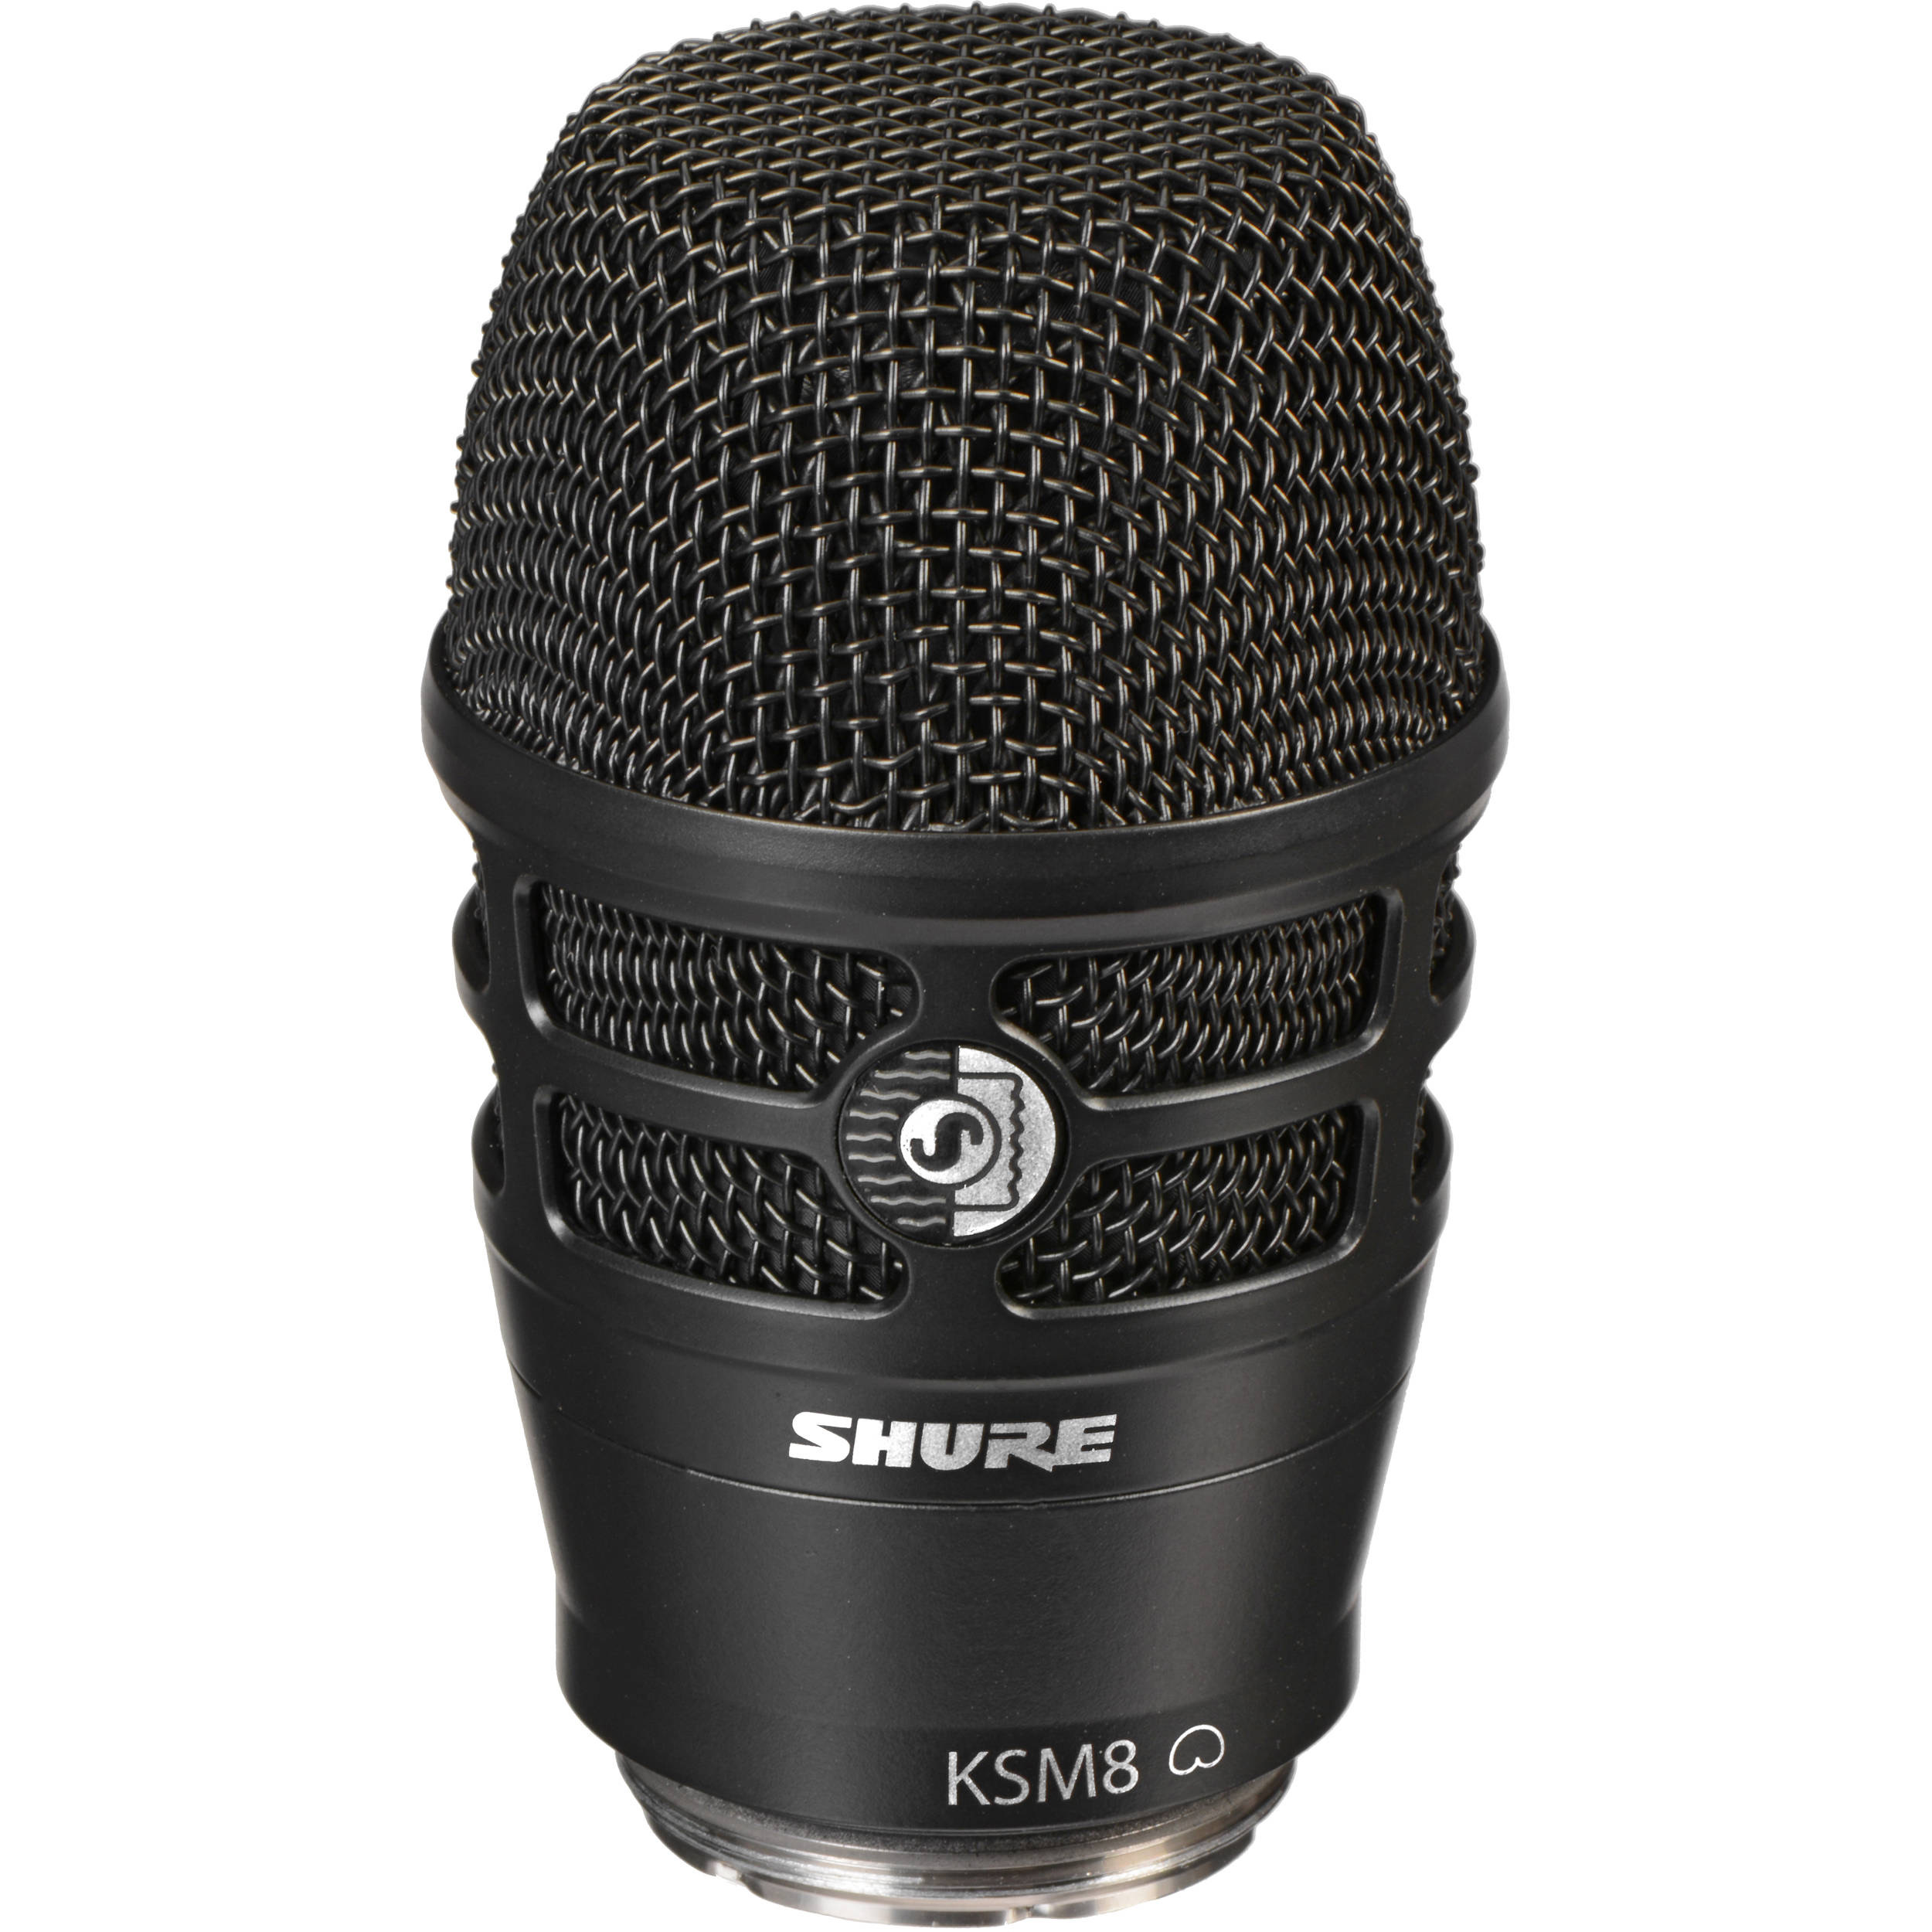 Shure RPW174 Black KSM8 Wireless Capsule for Black Shure Transmitters Радиомикрофоны